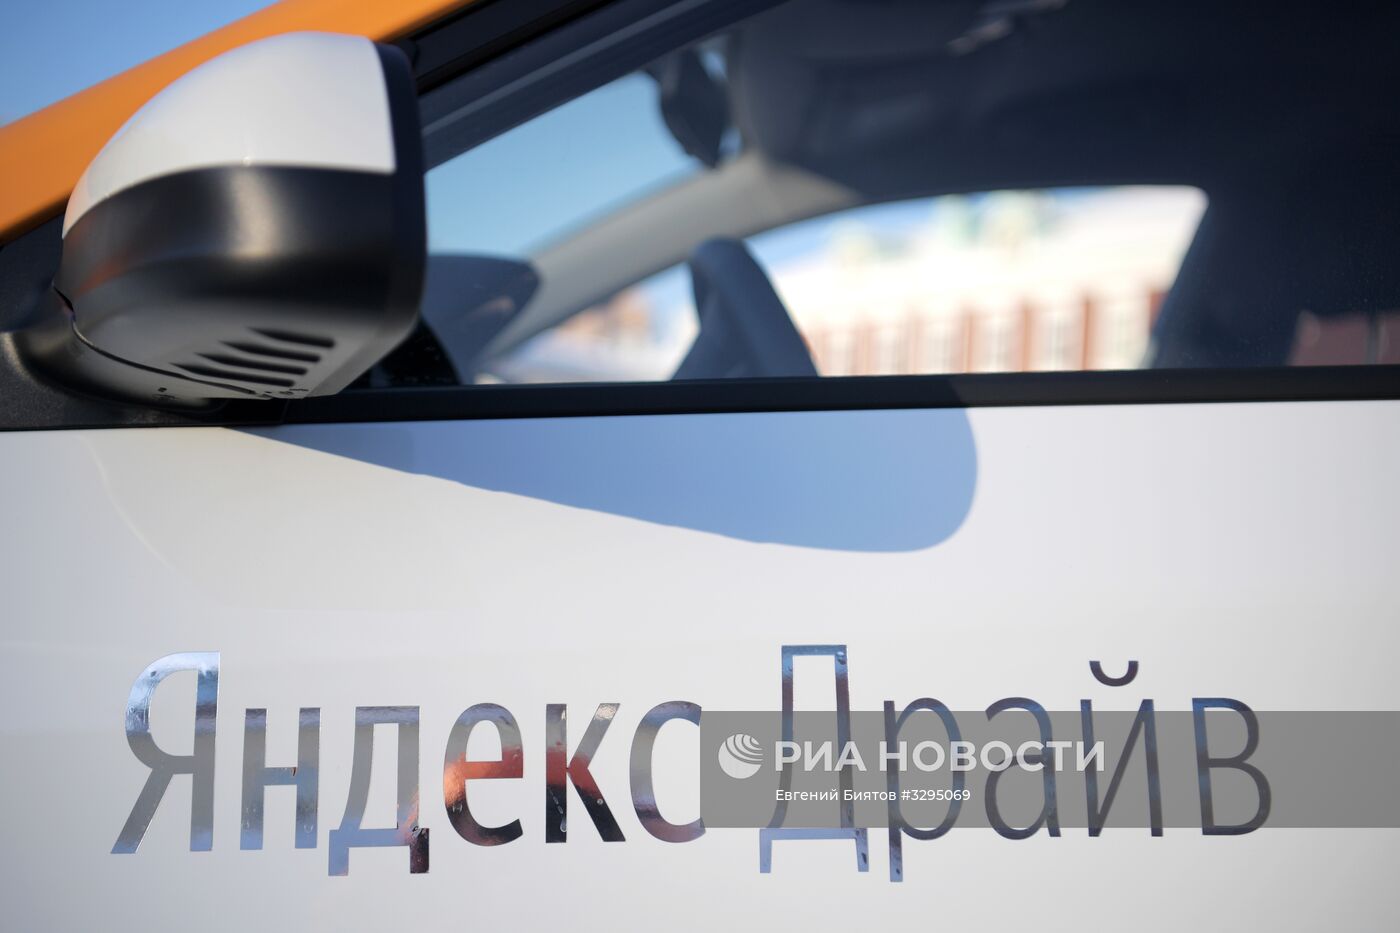 "Яндекс" запускает сервис каршеринга "Яндекс.Драйв"